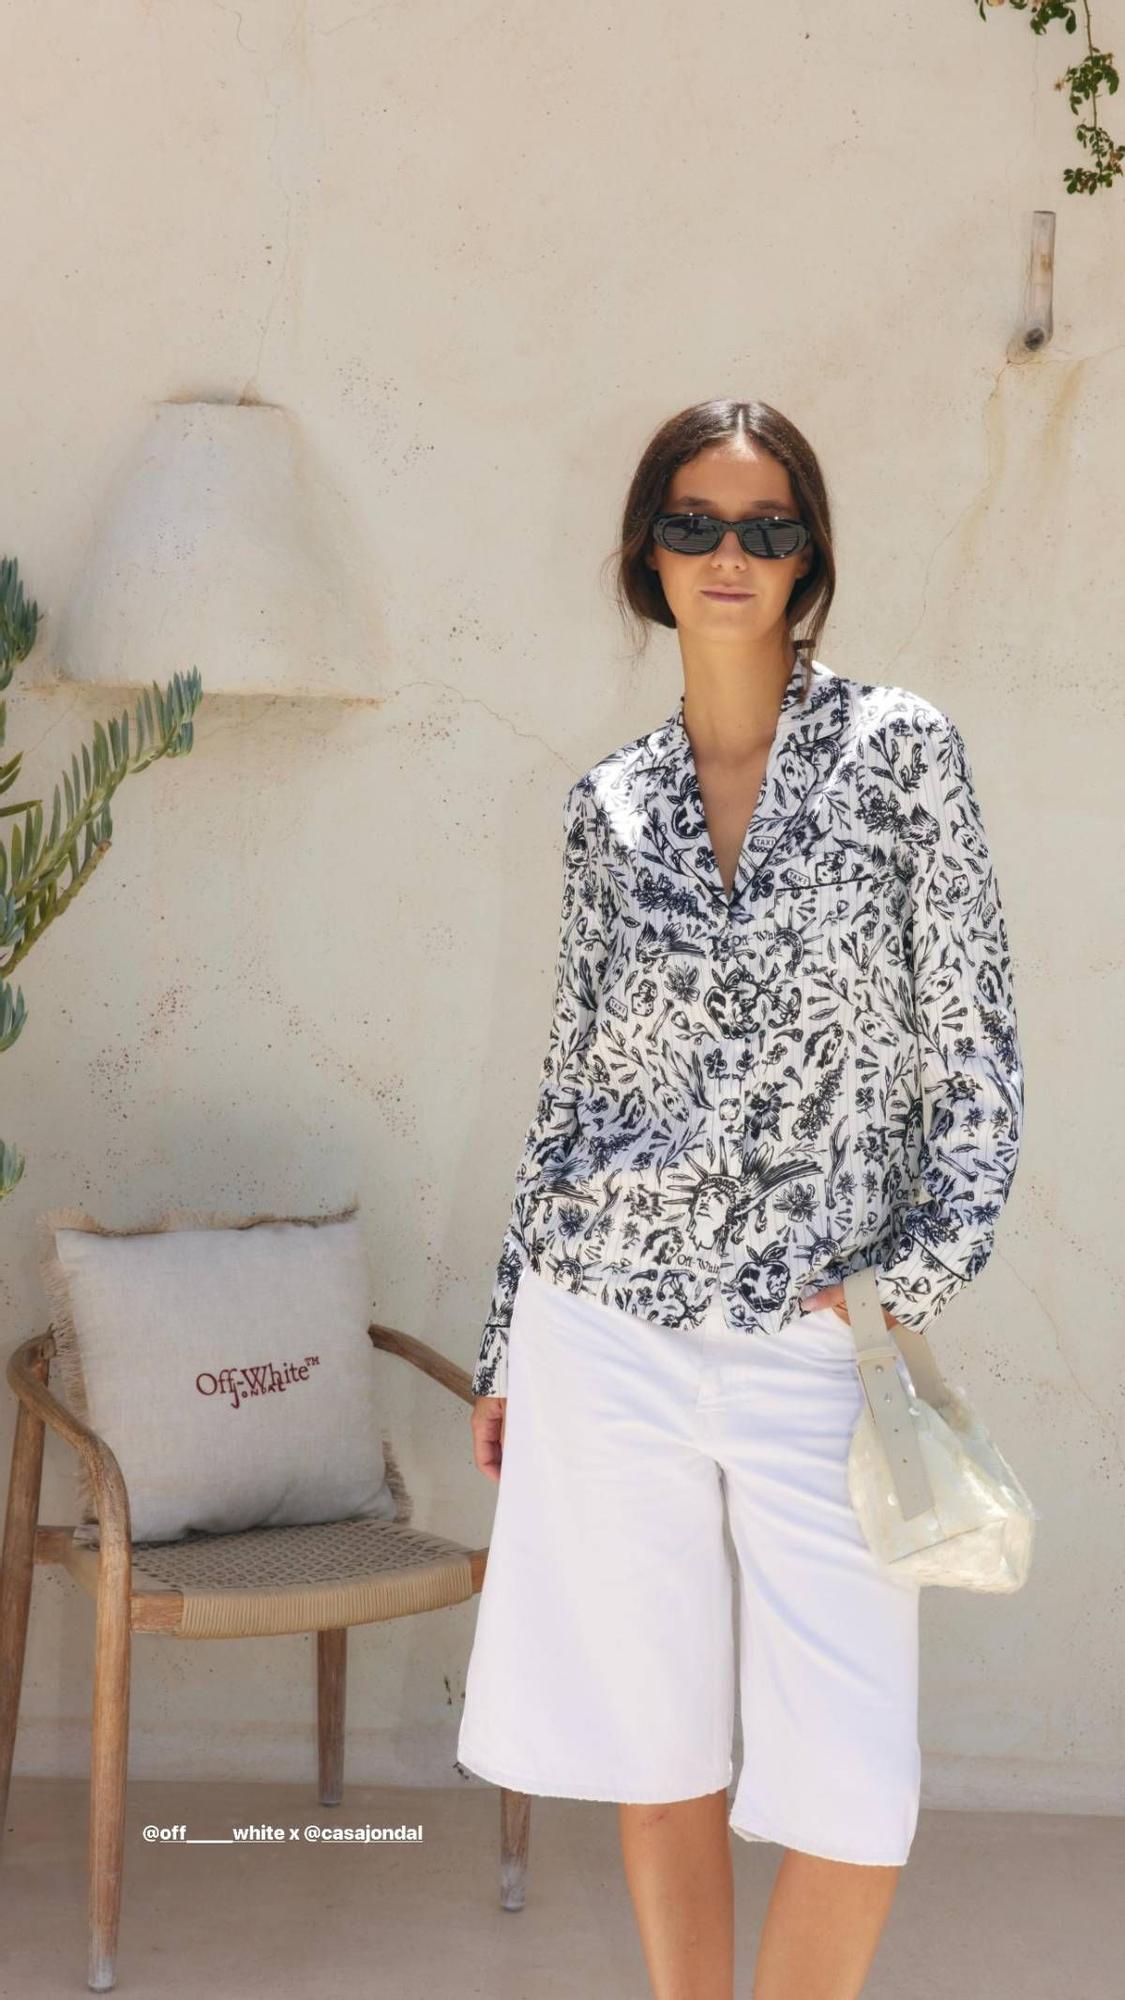 El look de Off-White de Victoria Federica en Ibiza